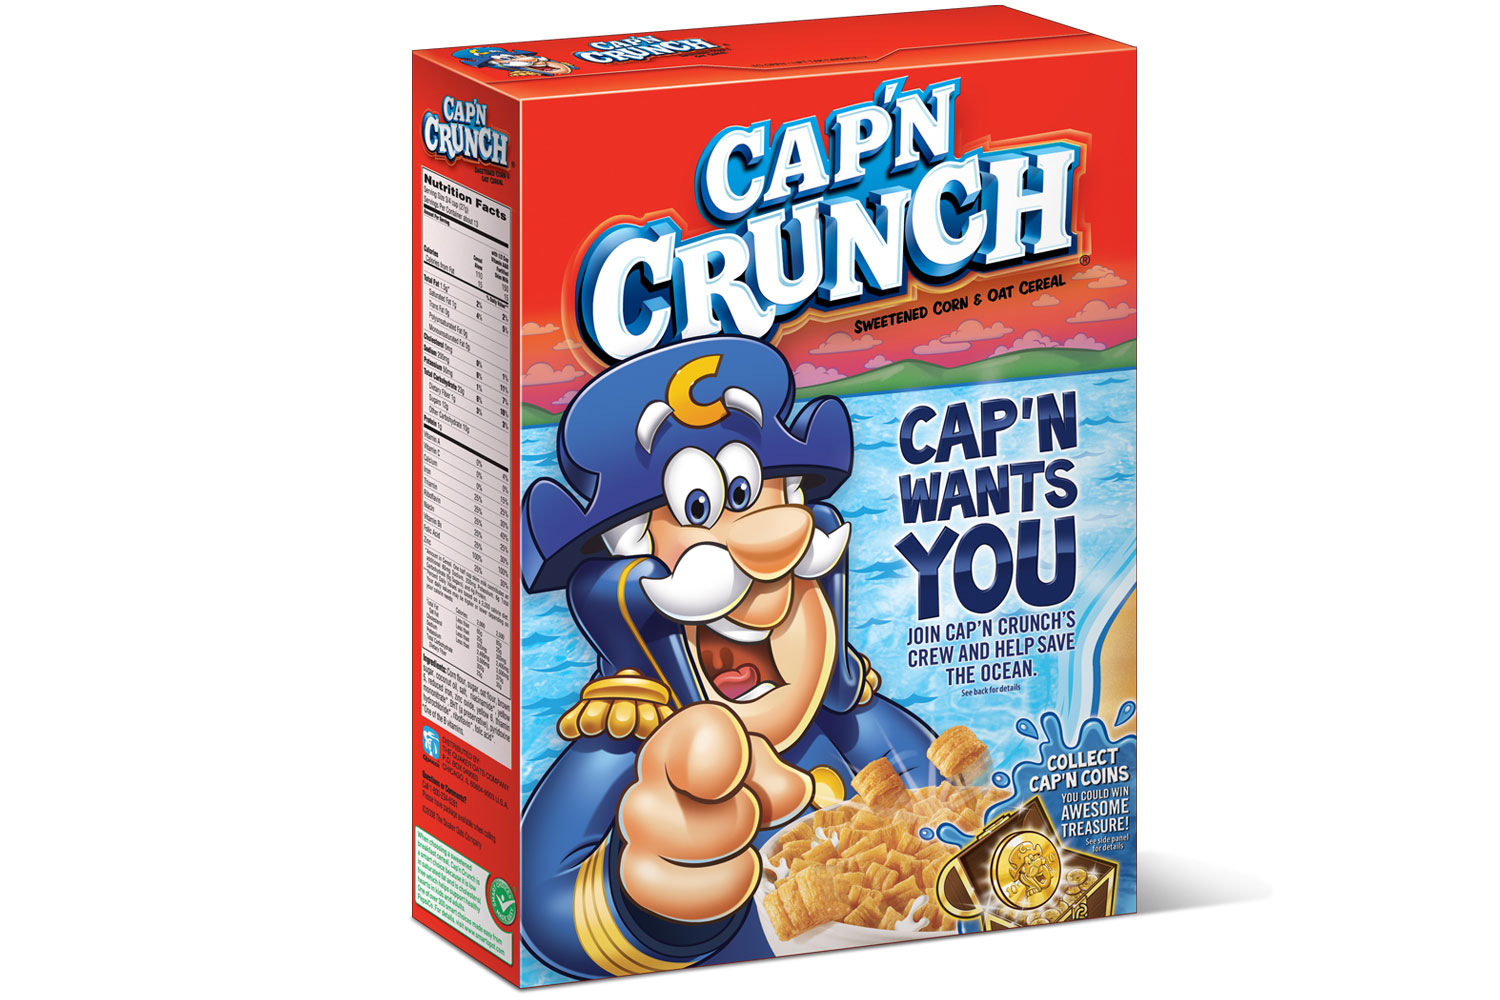 Client: Cap 'N Crunch/Marketing Arm